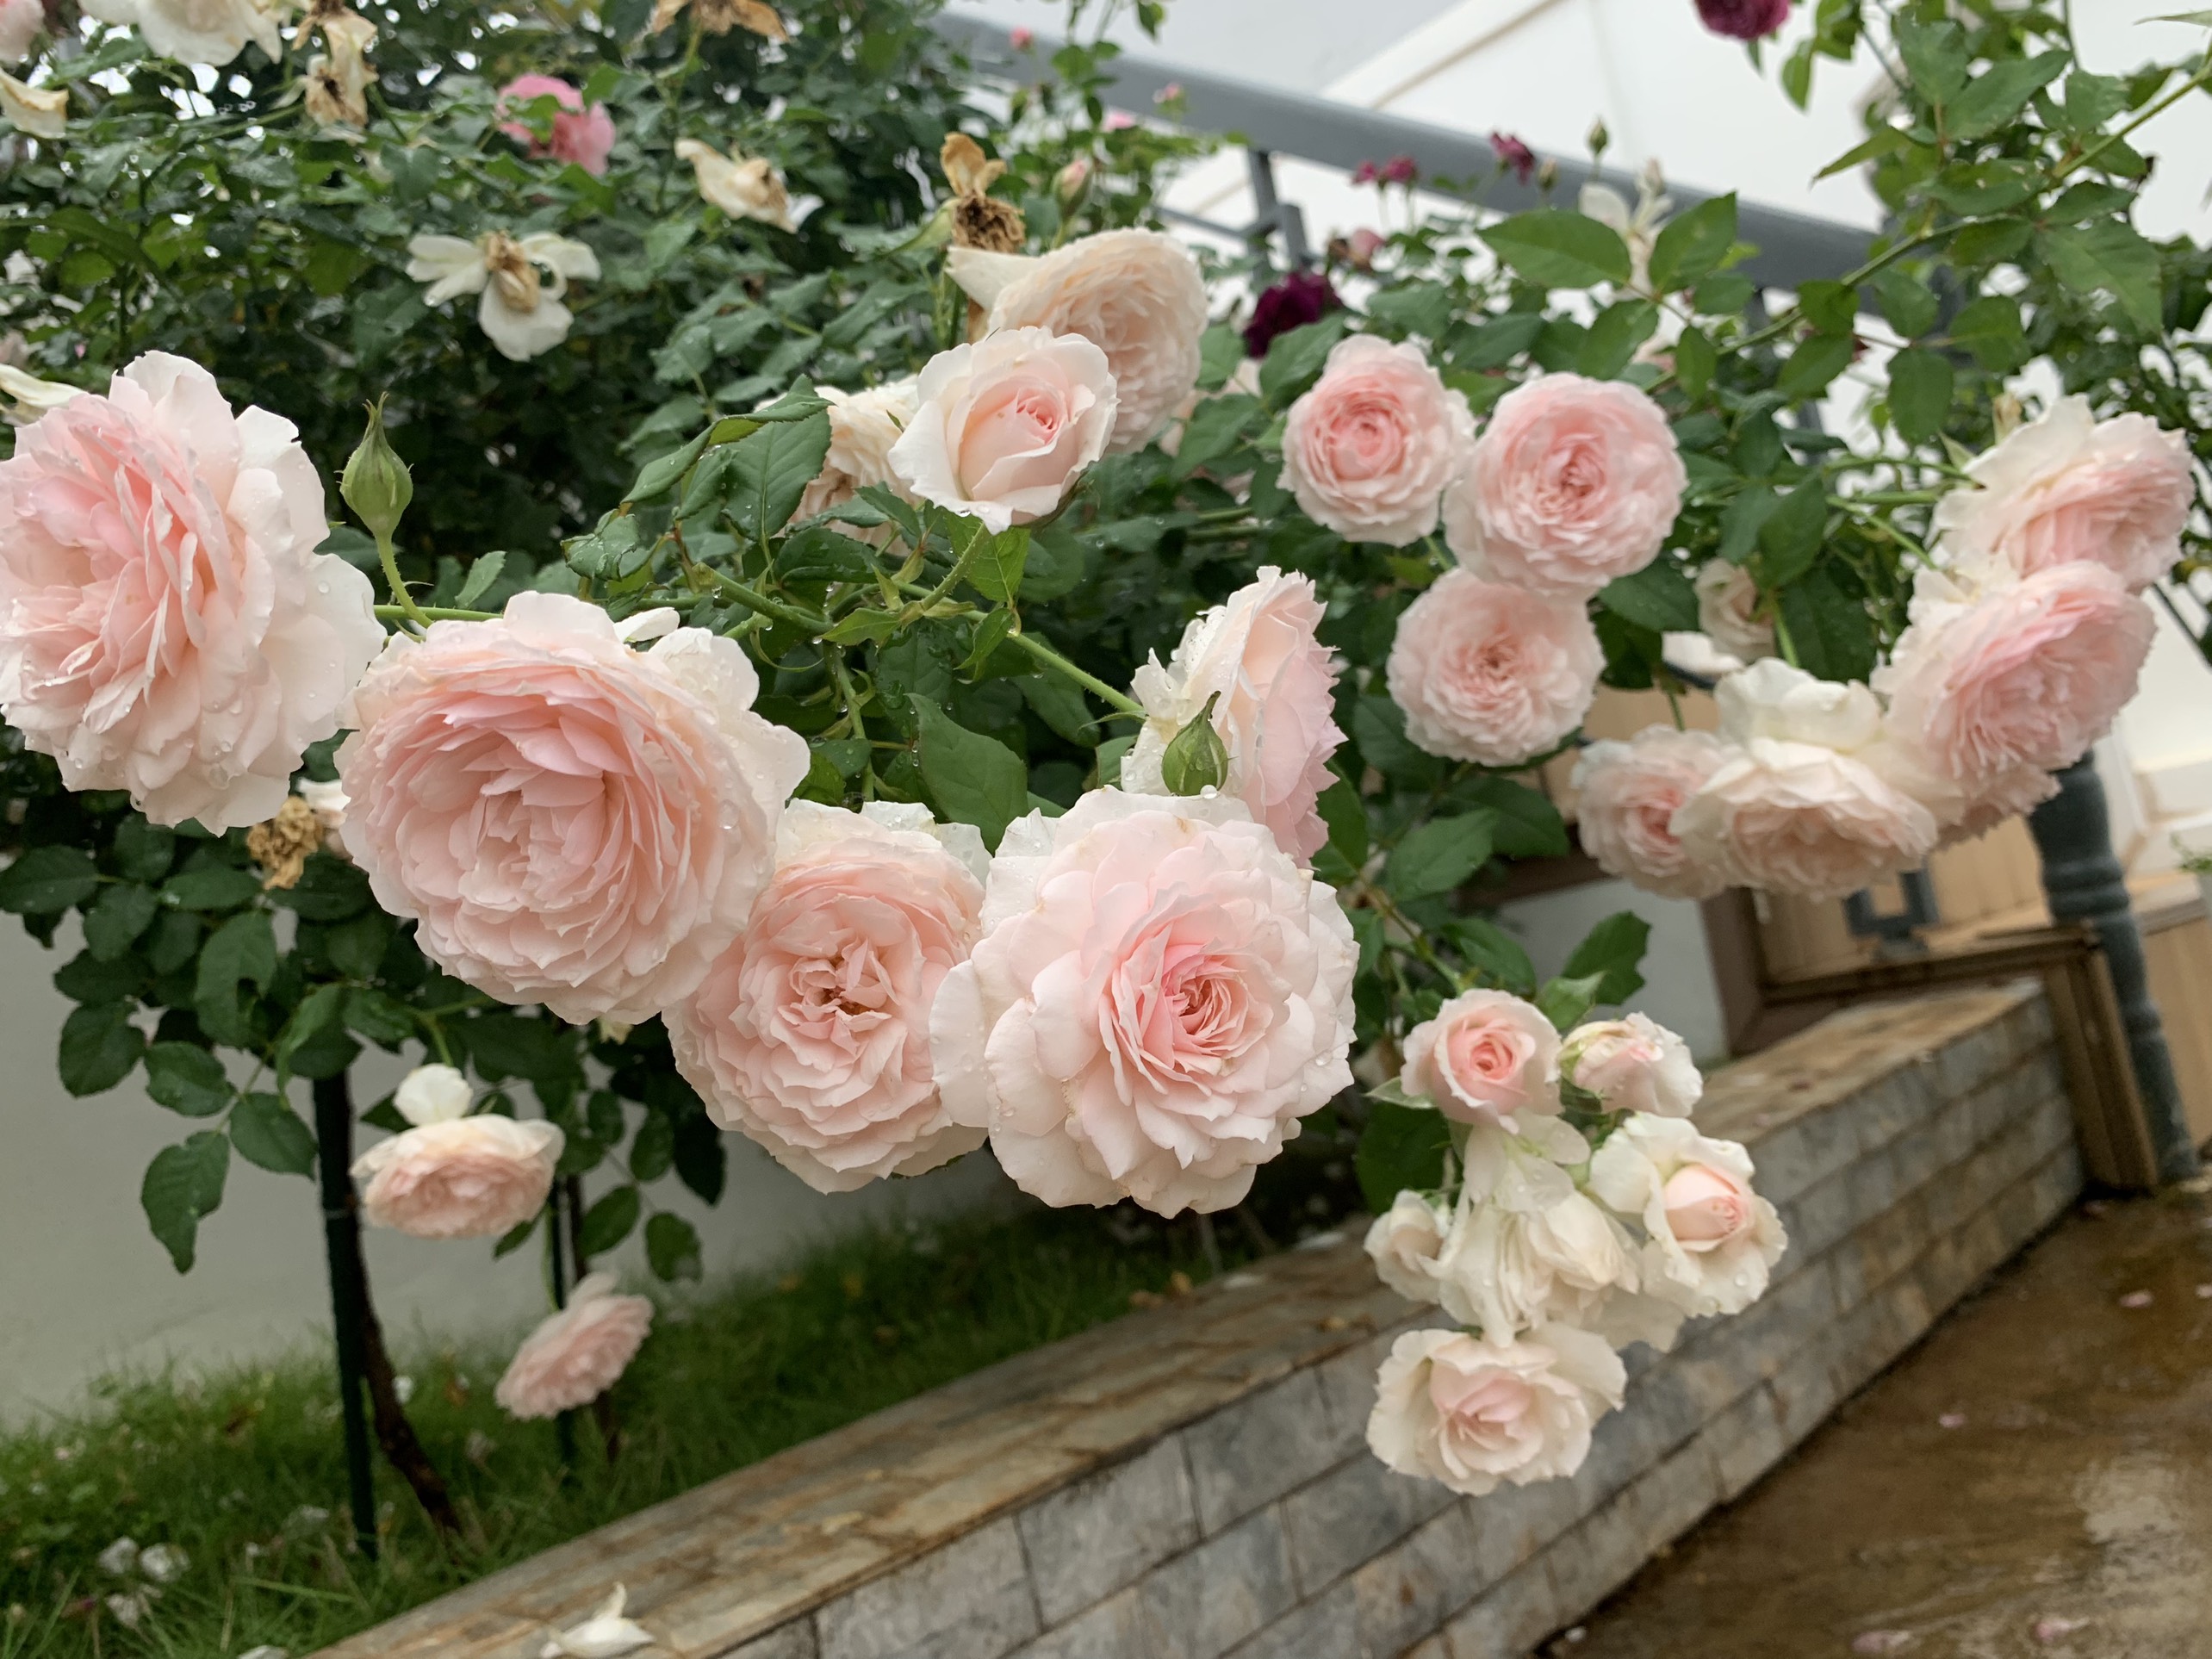 Vườn hoa hồng tươi thắm và sống động sẽ mang đến cho bạn một cảm giác yên bình và thư thái. Hãy đến với vườn hoa hồng để khám phá thế giới tuyệt đẹp của những bông hoa hồng và tận hưởng không gian trong lành tự nhiên.